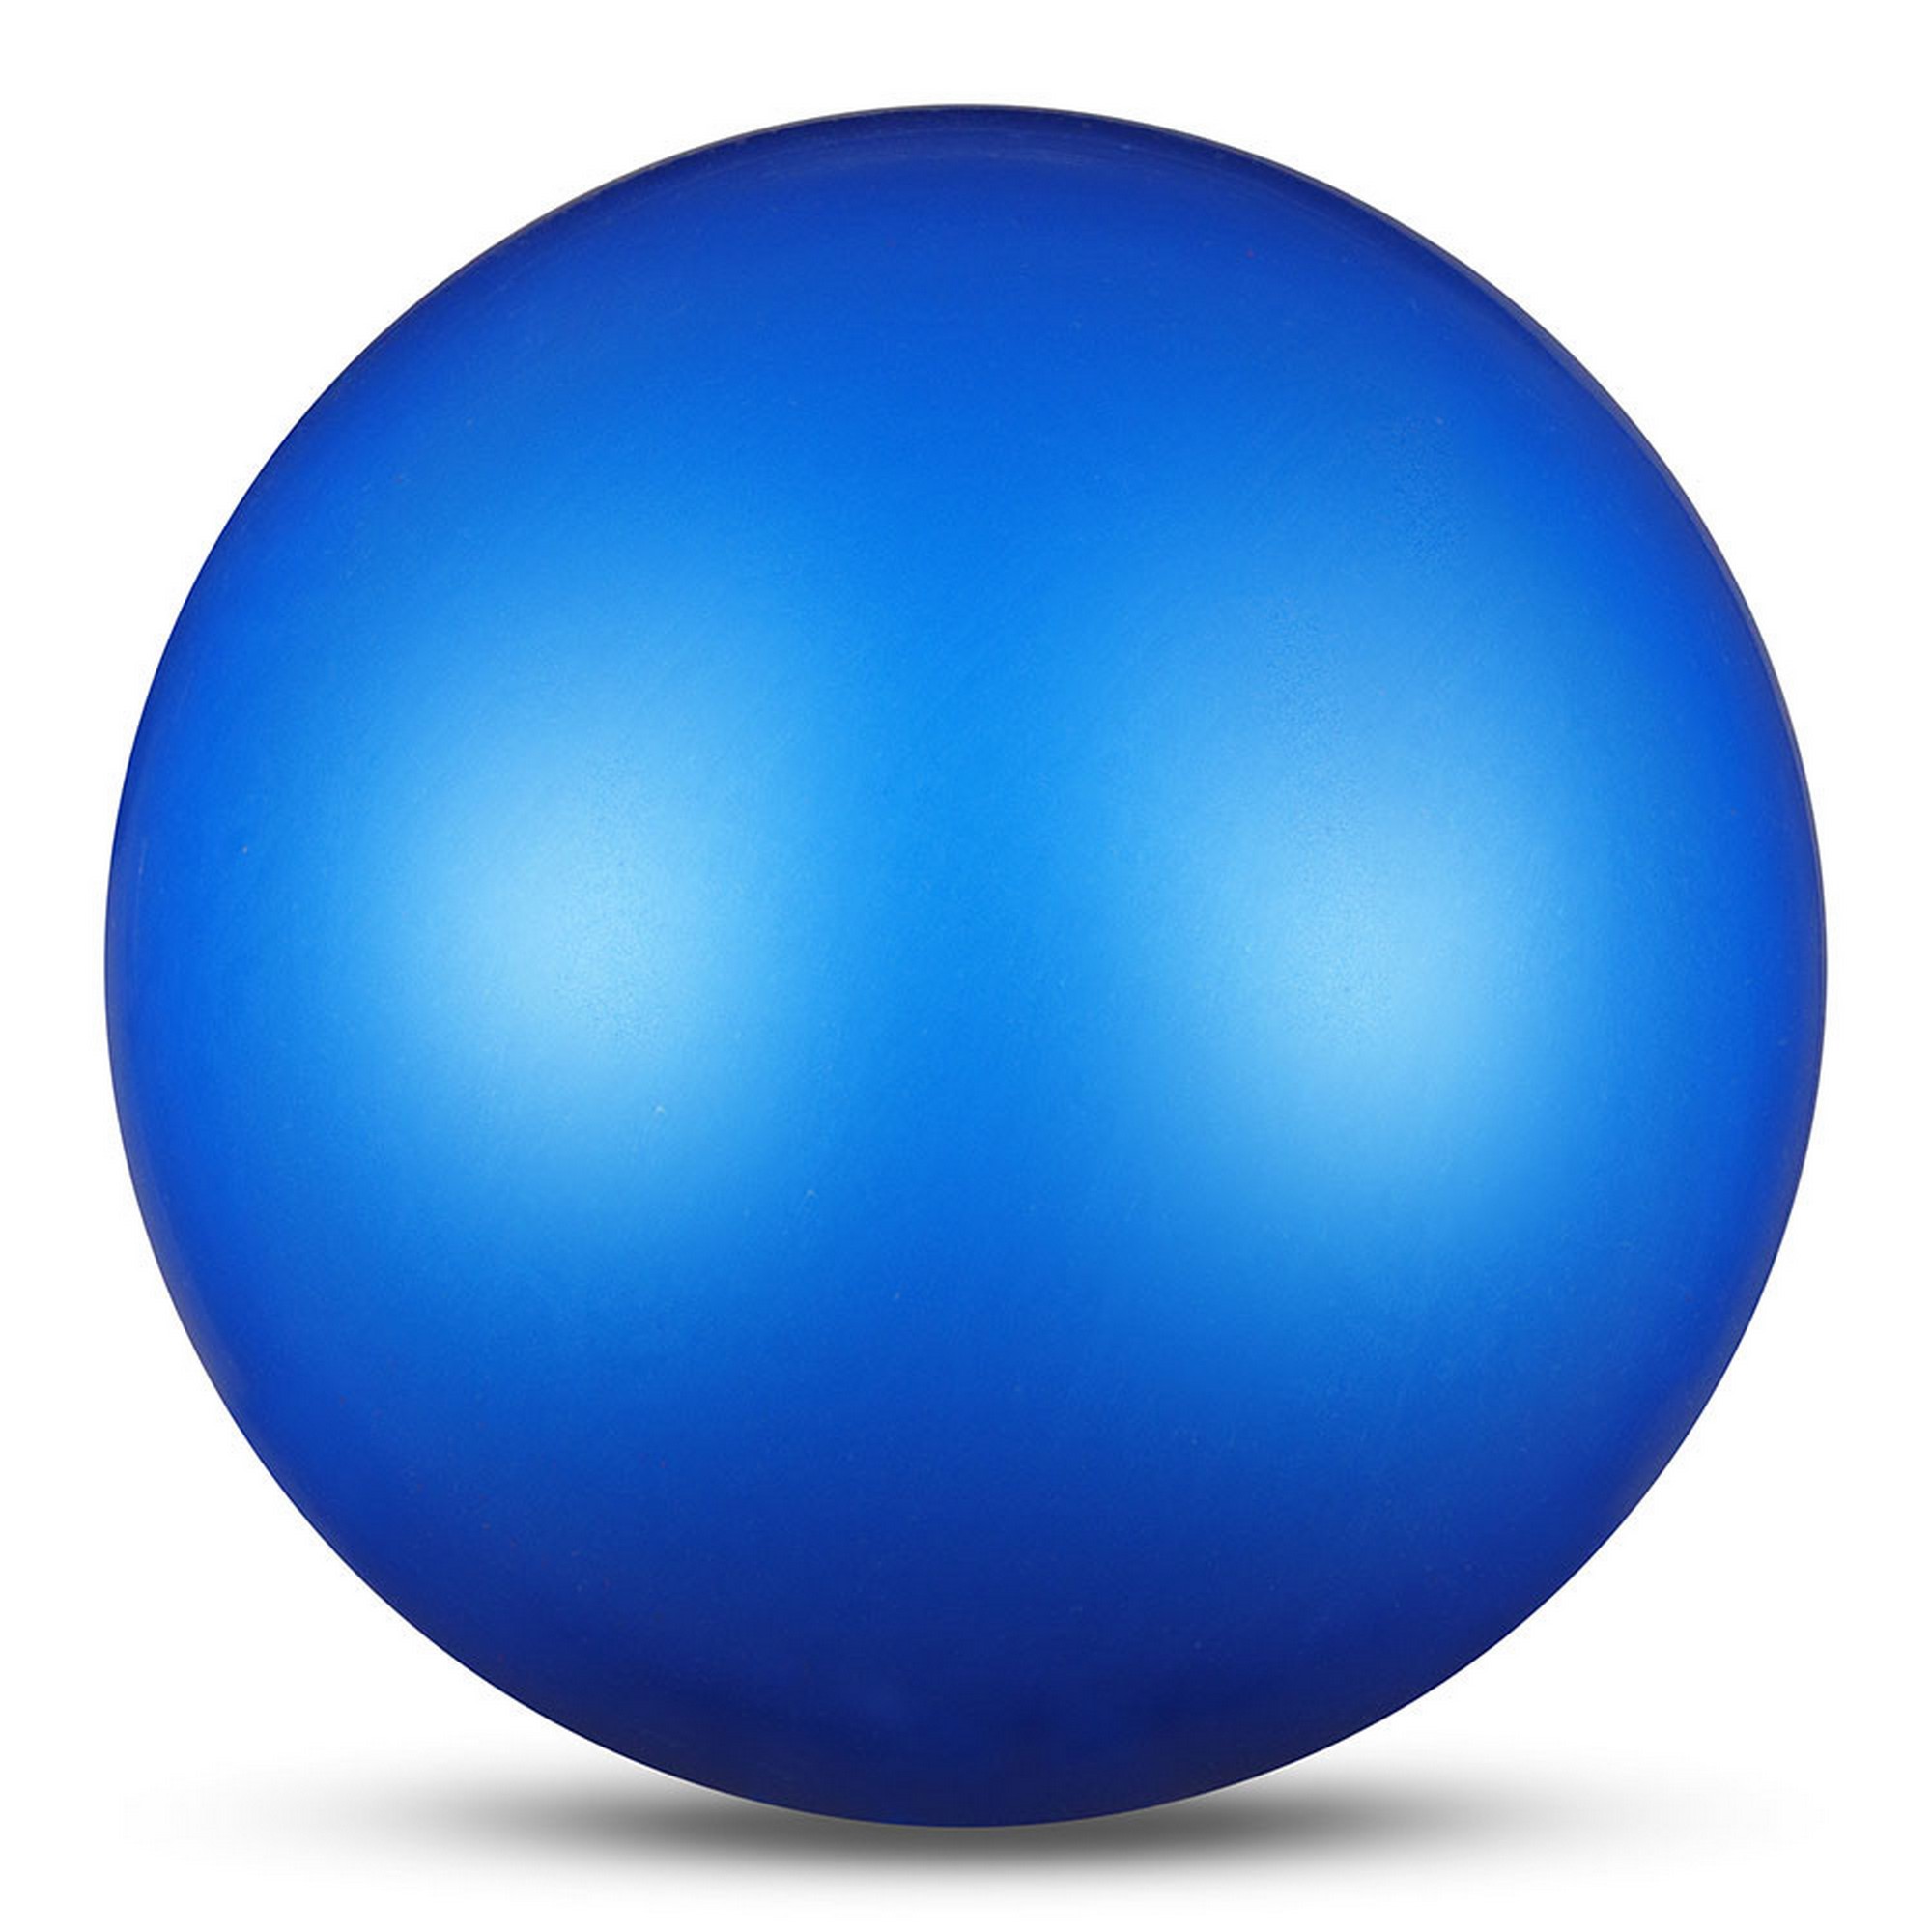 Мяч для художественной гимнастики d15см Indigo ПВХ IN315-B синий металлик 2000_2000